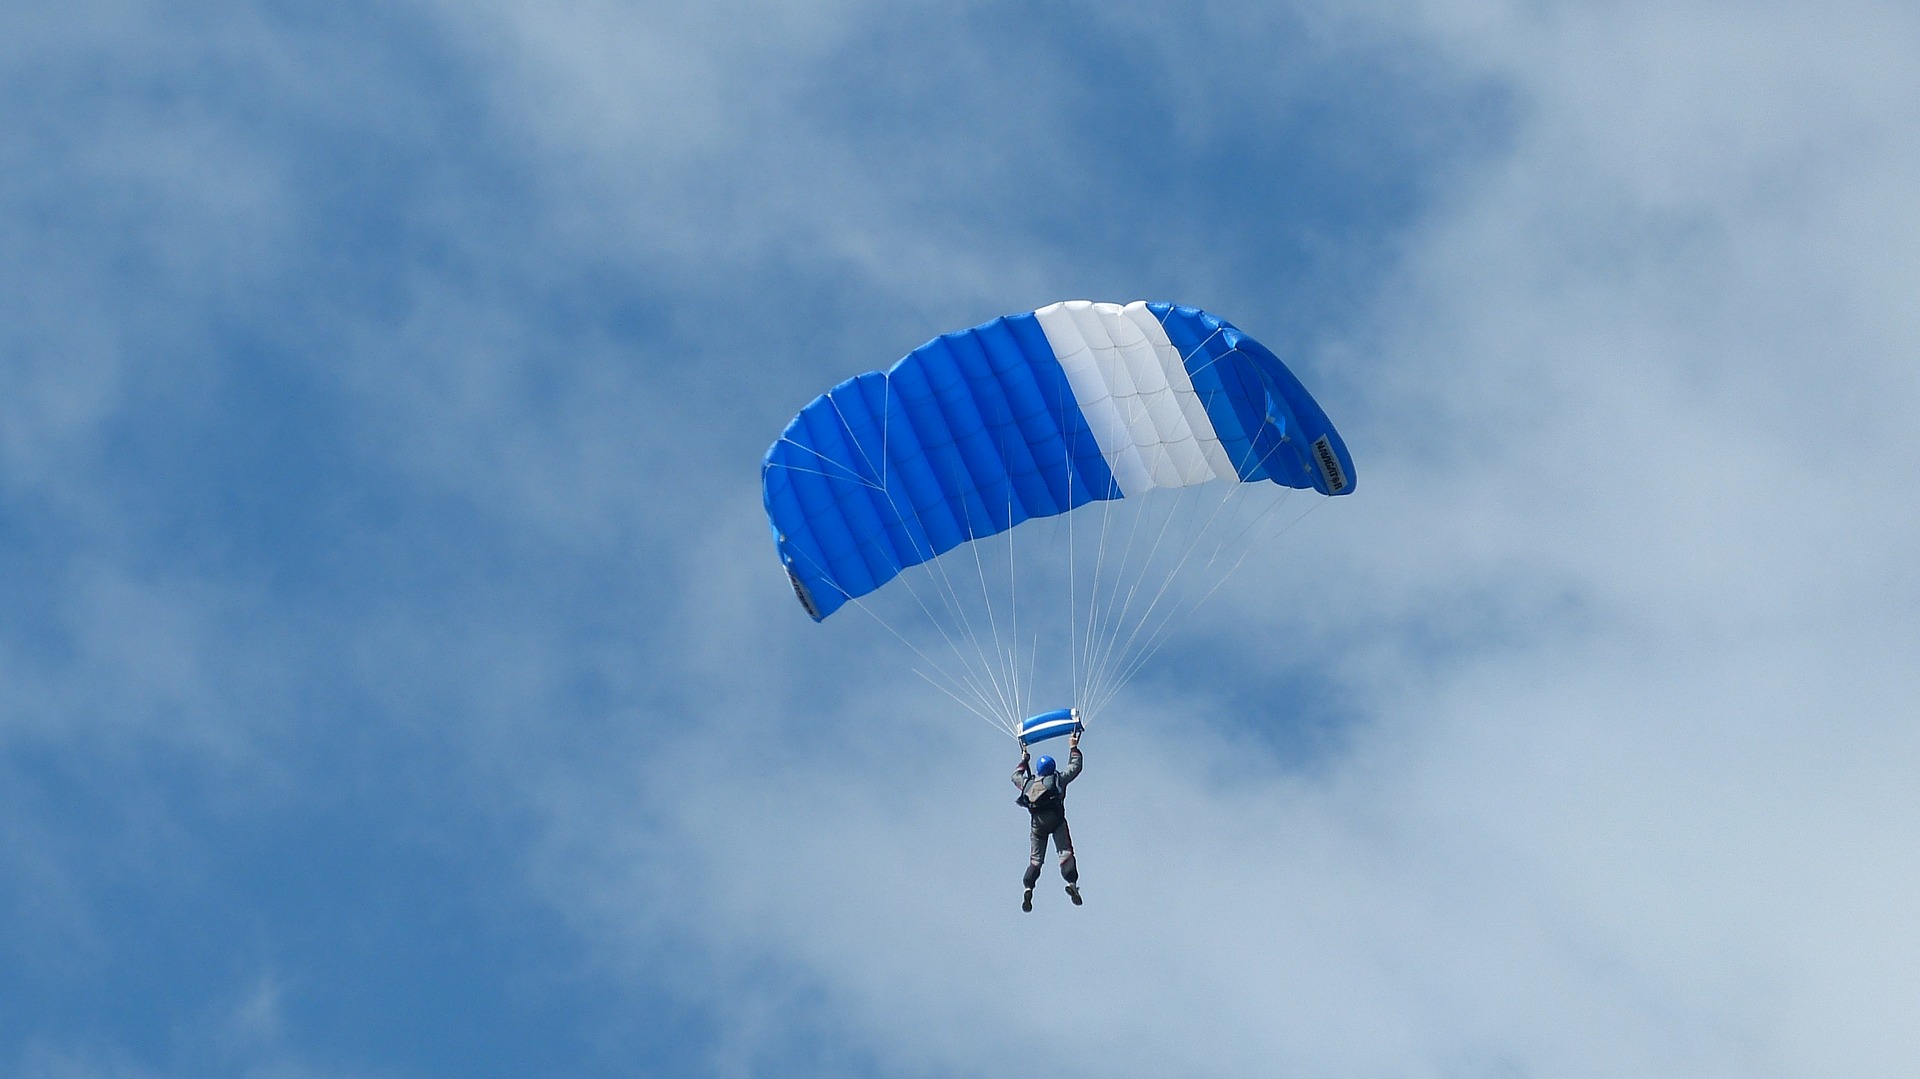 Tandemowy skok ze spadochronem jako prezent – jak sprawić radość swoim najbliższym?